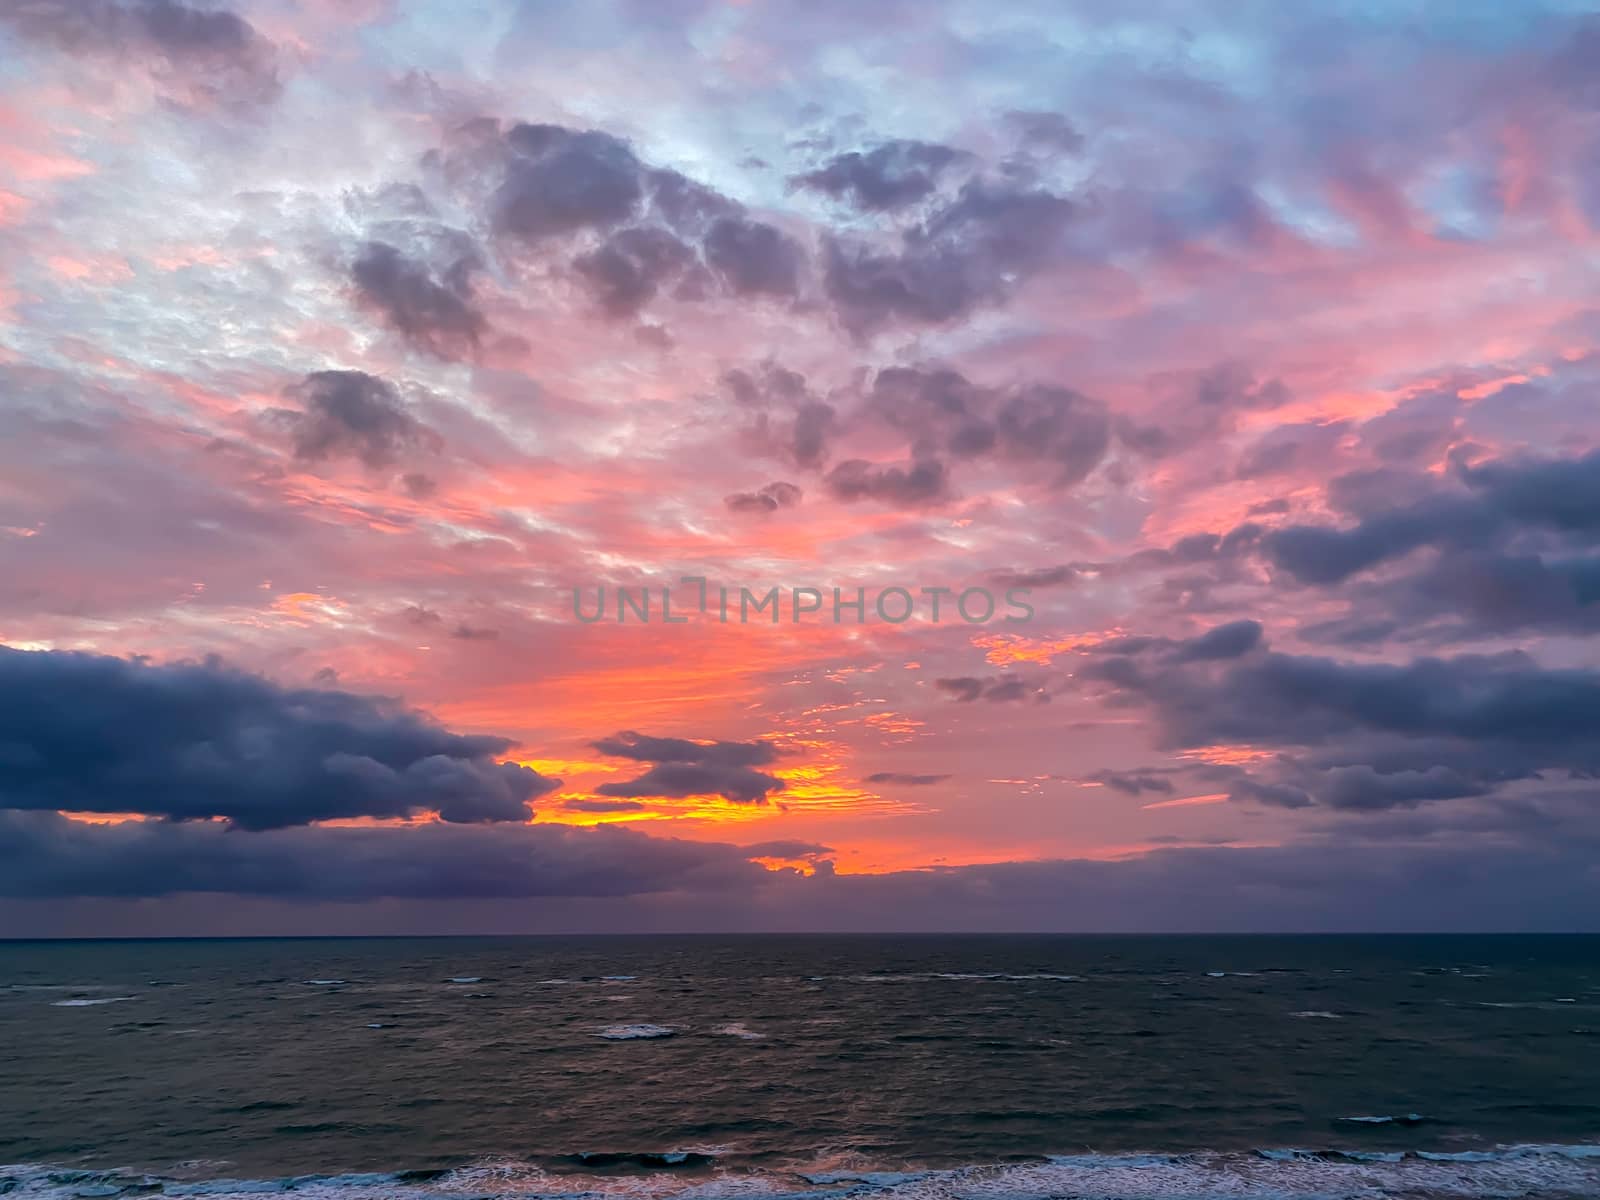 A vibrant sunrise over the Atlantic Ocean by Jshanebutt